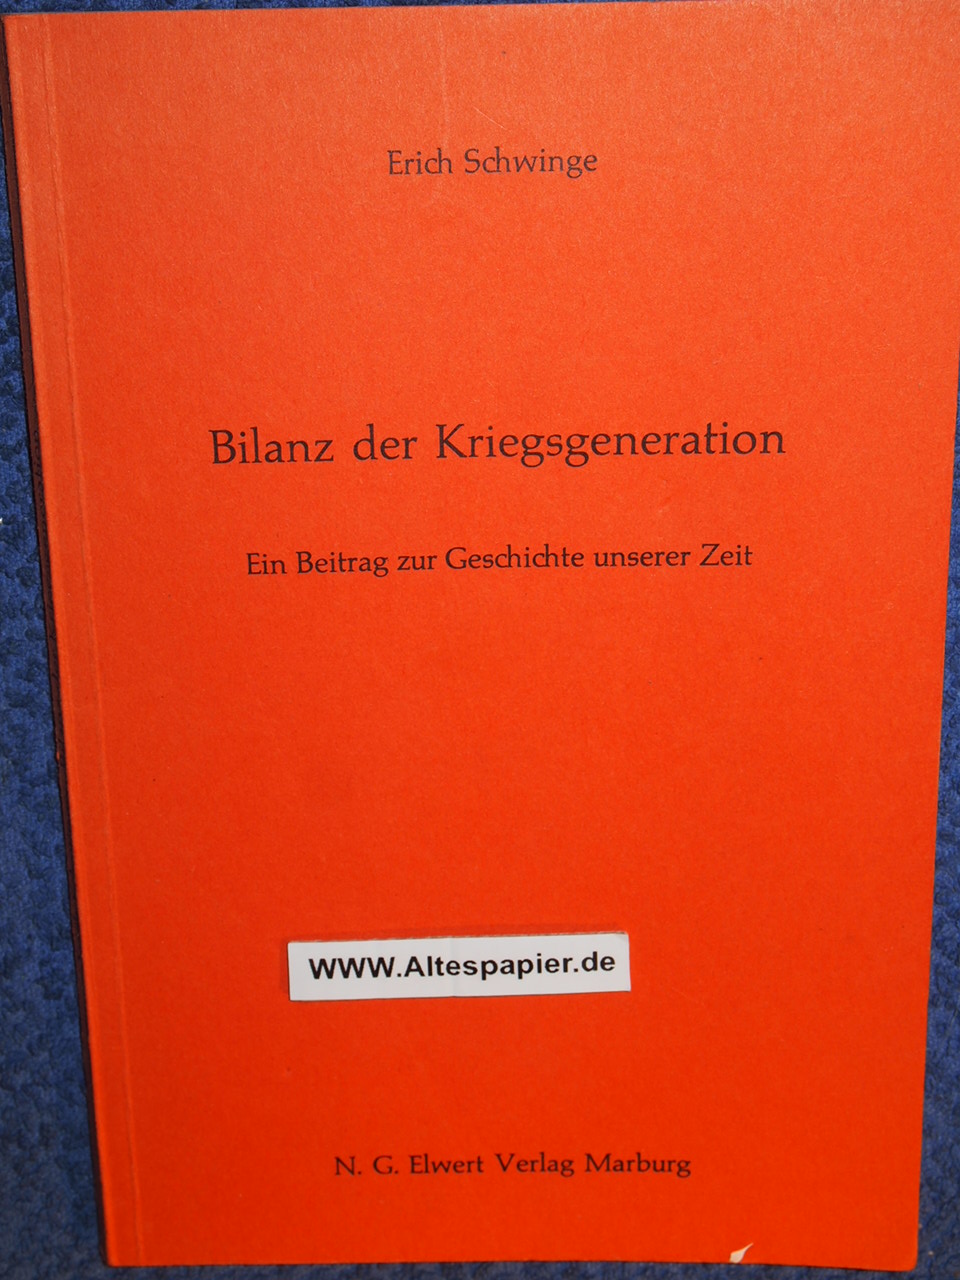 Bilanz der Kriegsgeneration : ein Beitrag zur Geschichte unserer Zeit. - Schwinge, Erich,i1903-1994